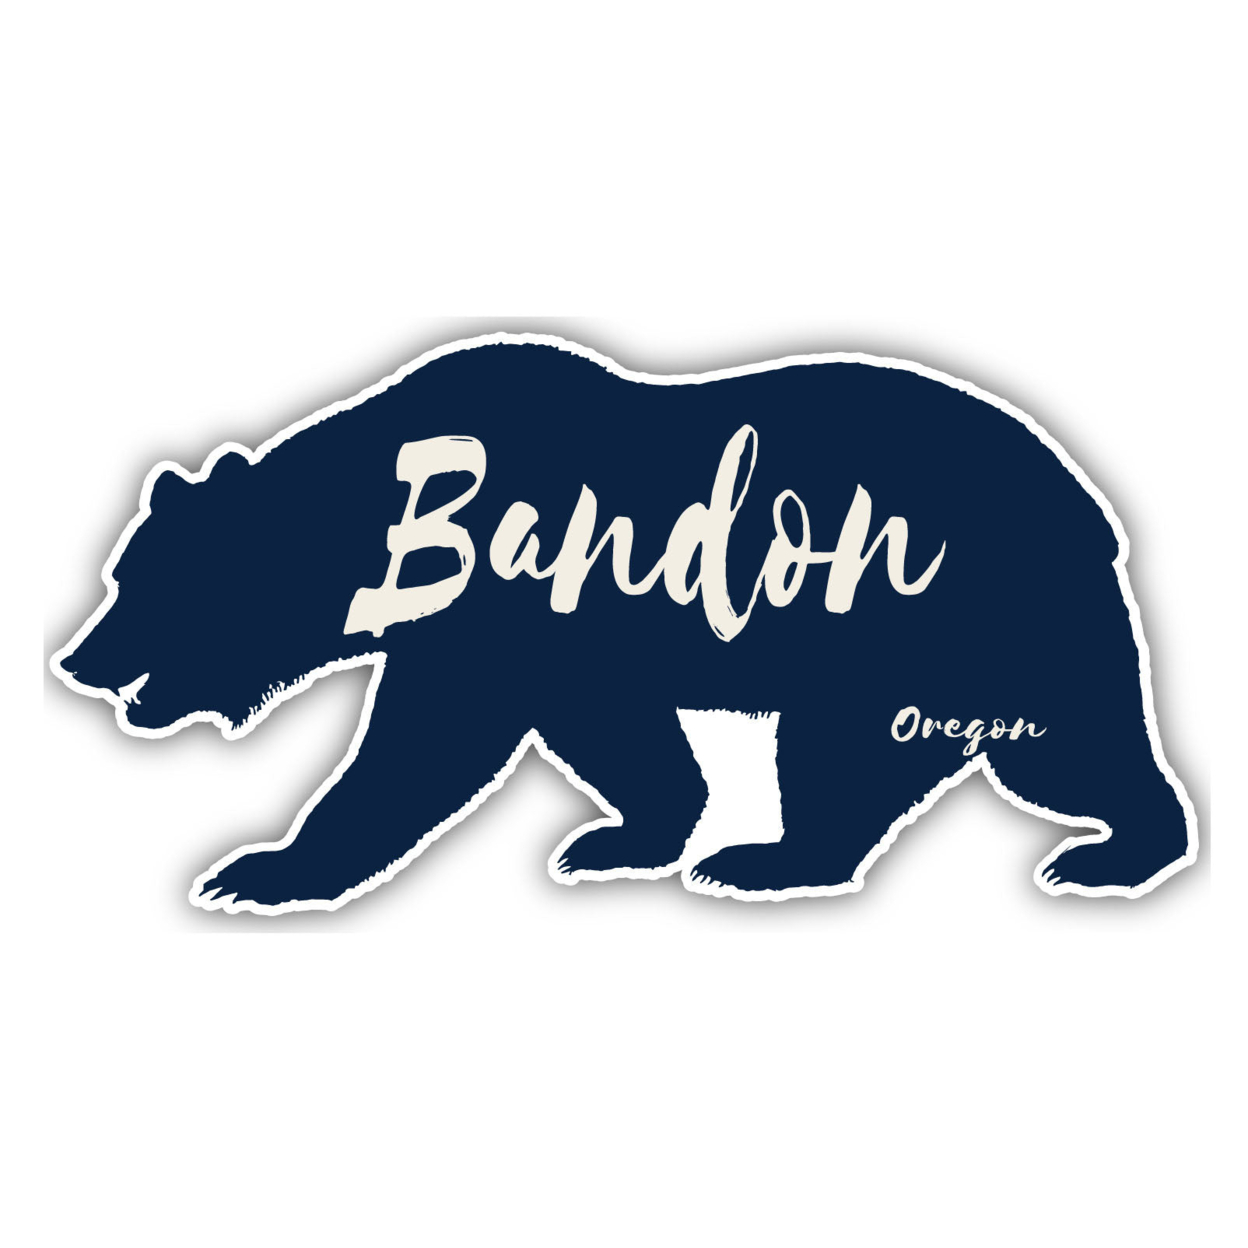 Bandon Oregon Souvenir Decorative Stickers (Choose Theme And Size) - Single Unit, 12-Inch, Tent